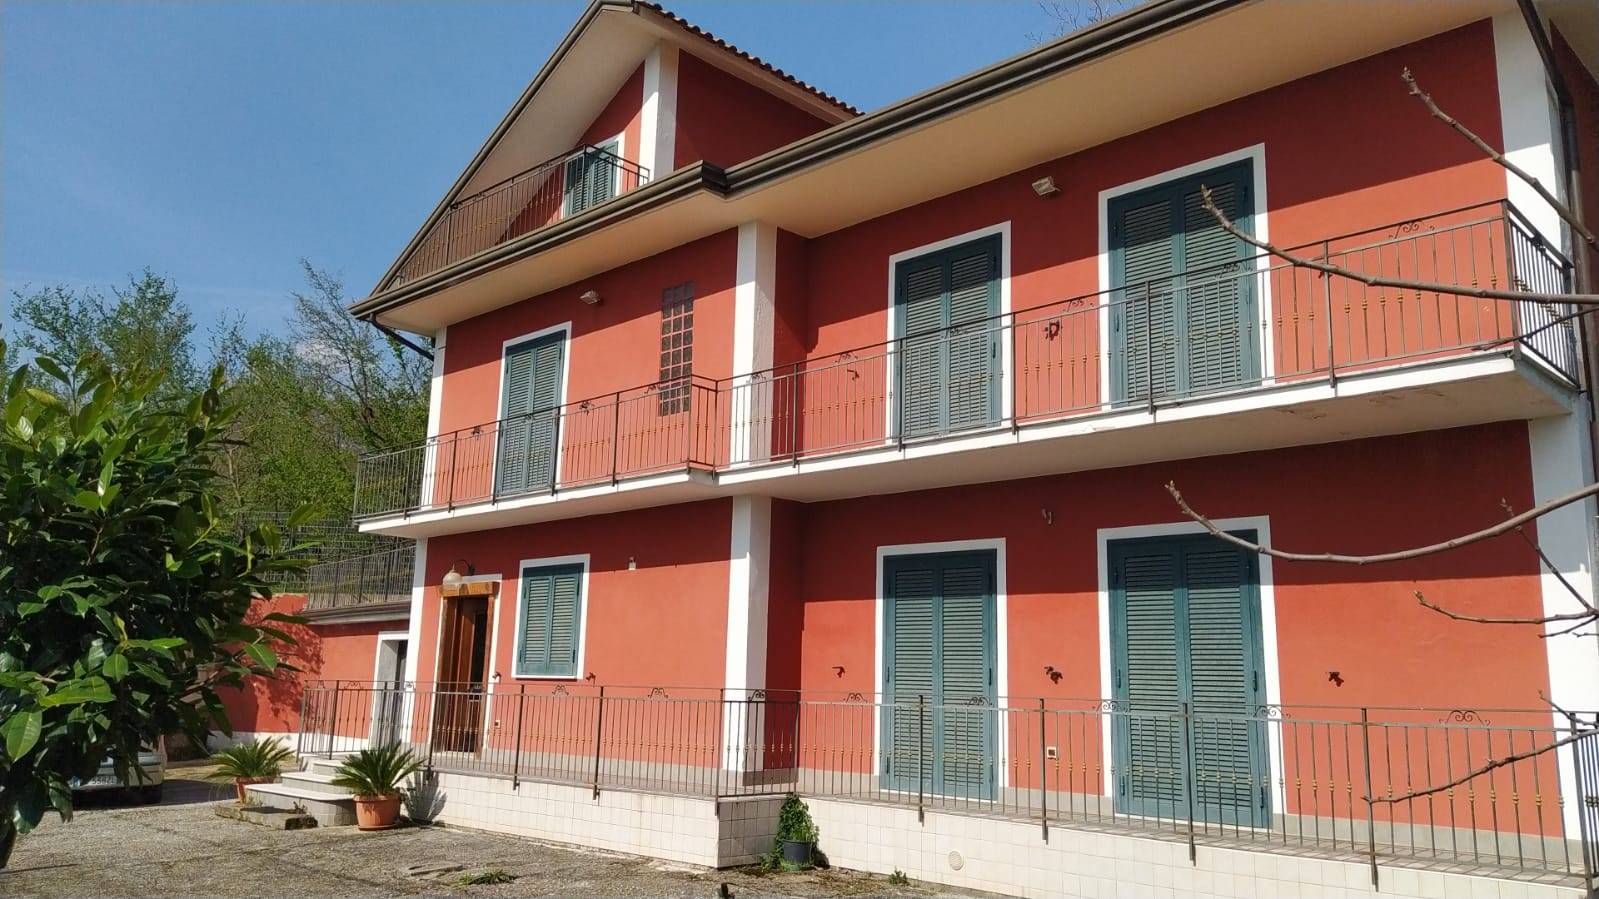 Villa in vendita a Capriglia Irpina